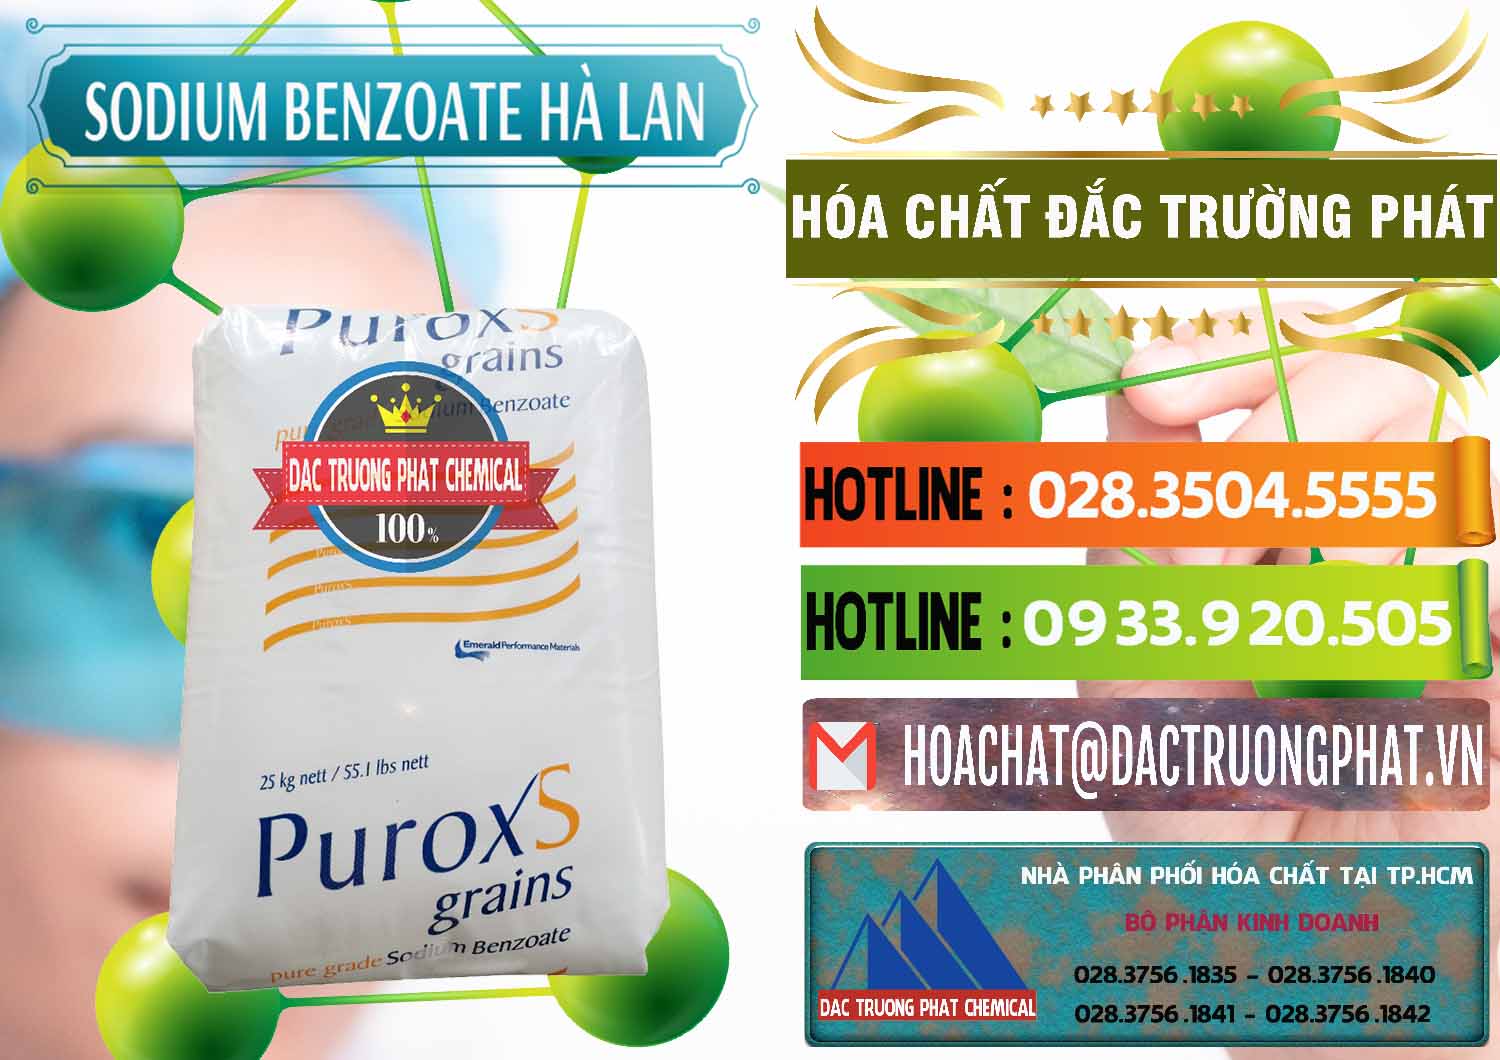 Công ty cung cấp & bán Sodium Benzoate - Mốc Bột Puroxs Hà Lan Netherlands - 0467 - Nhà cung cấp - kinh doanh hóa chất tại TP.HCM - cungcaphoachat.com.vn